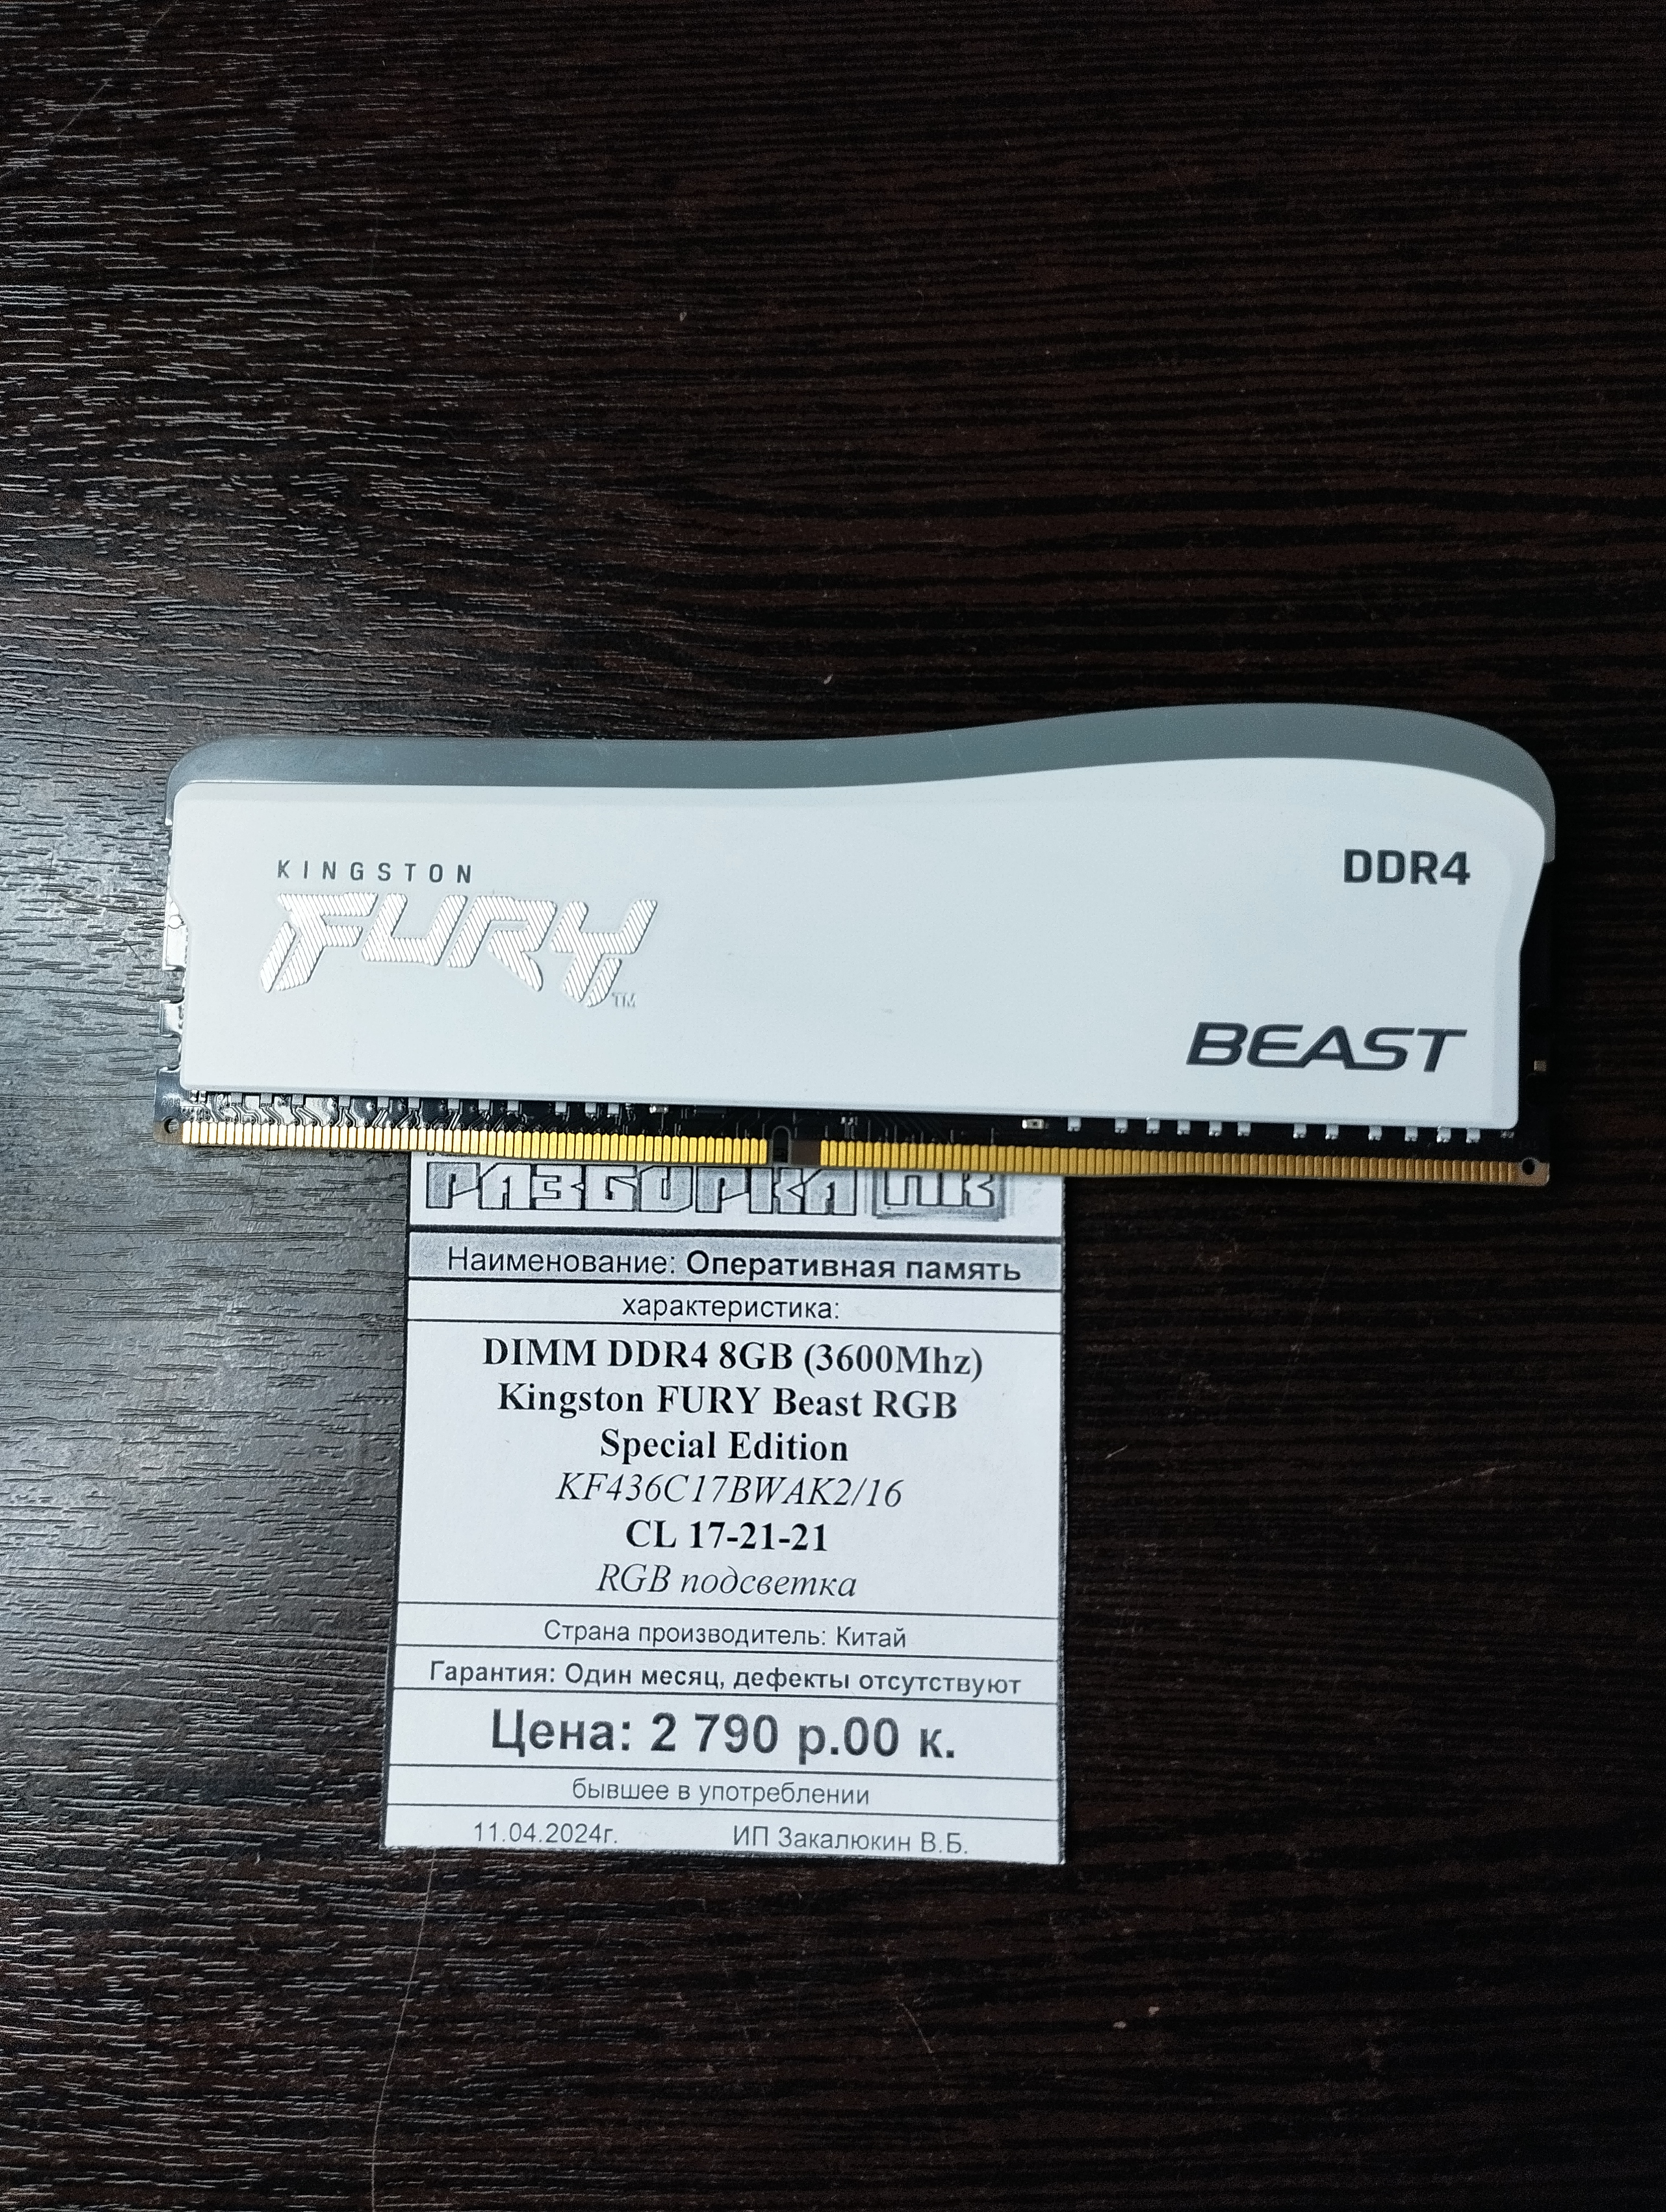 Оперативная память DIMM DDR4 8GB Kingston FURY Beast Special Edition